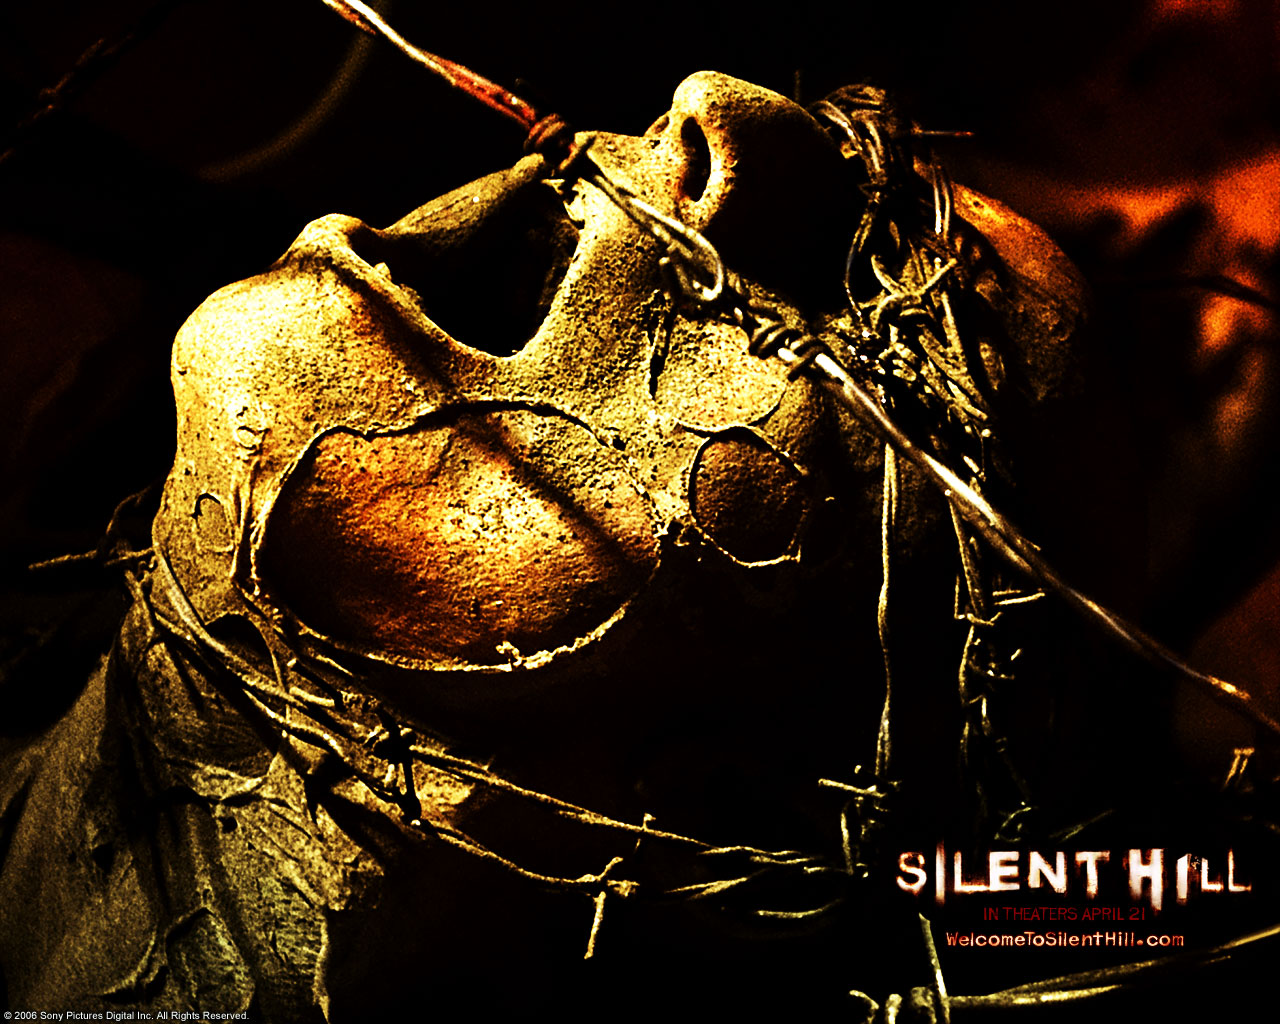 壁纸1280x1024 Movie wallpaper Silent Hill 2006 寂静岭 电影壁纸壁纸 恐怖电影《寂静岭 Silent Hill》壁纸 恐怖电影《寂静岭 Silent Hill》图片 恐怖电影《寂静岭 Silent Hill》素材 影视壁纸 影视图库 影视图片素材桌面壁纸